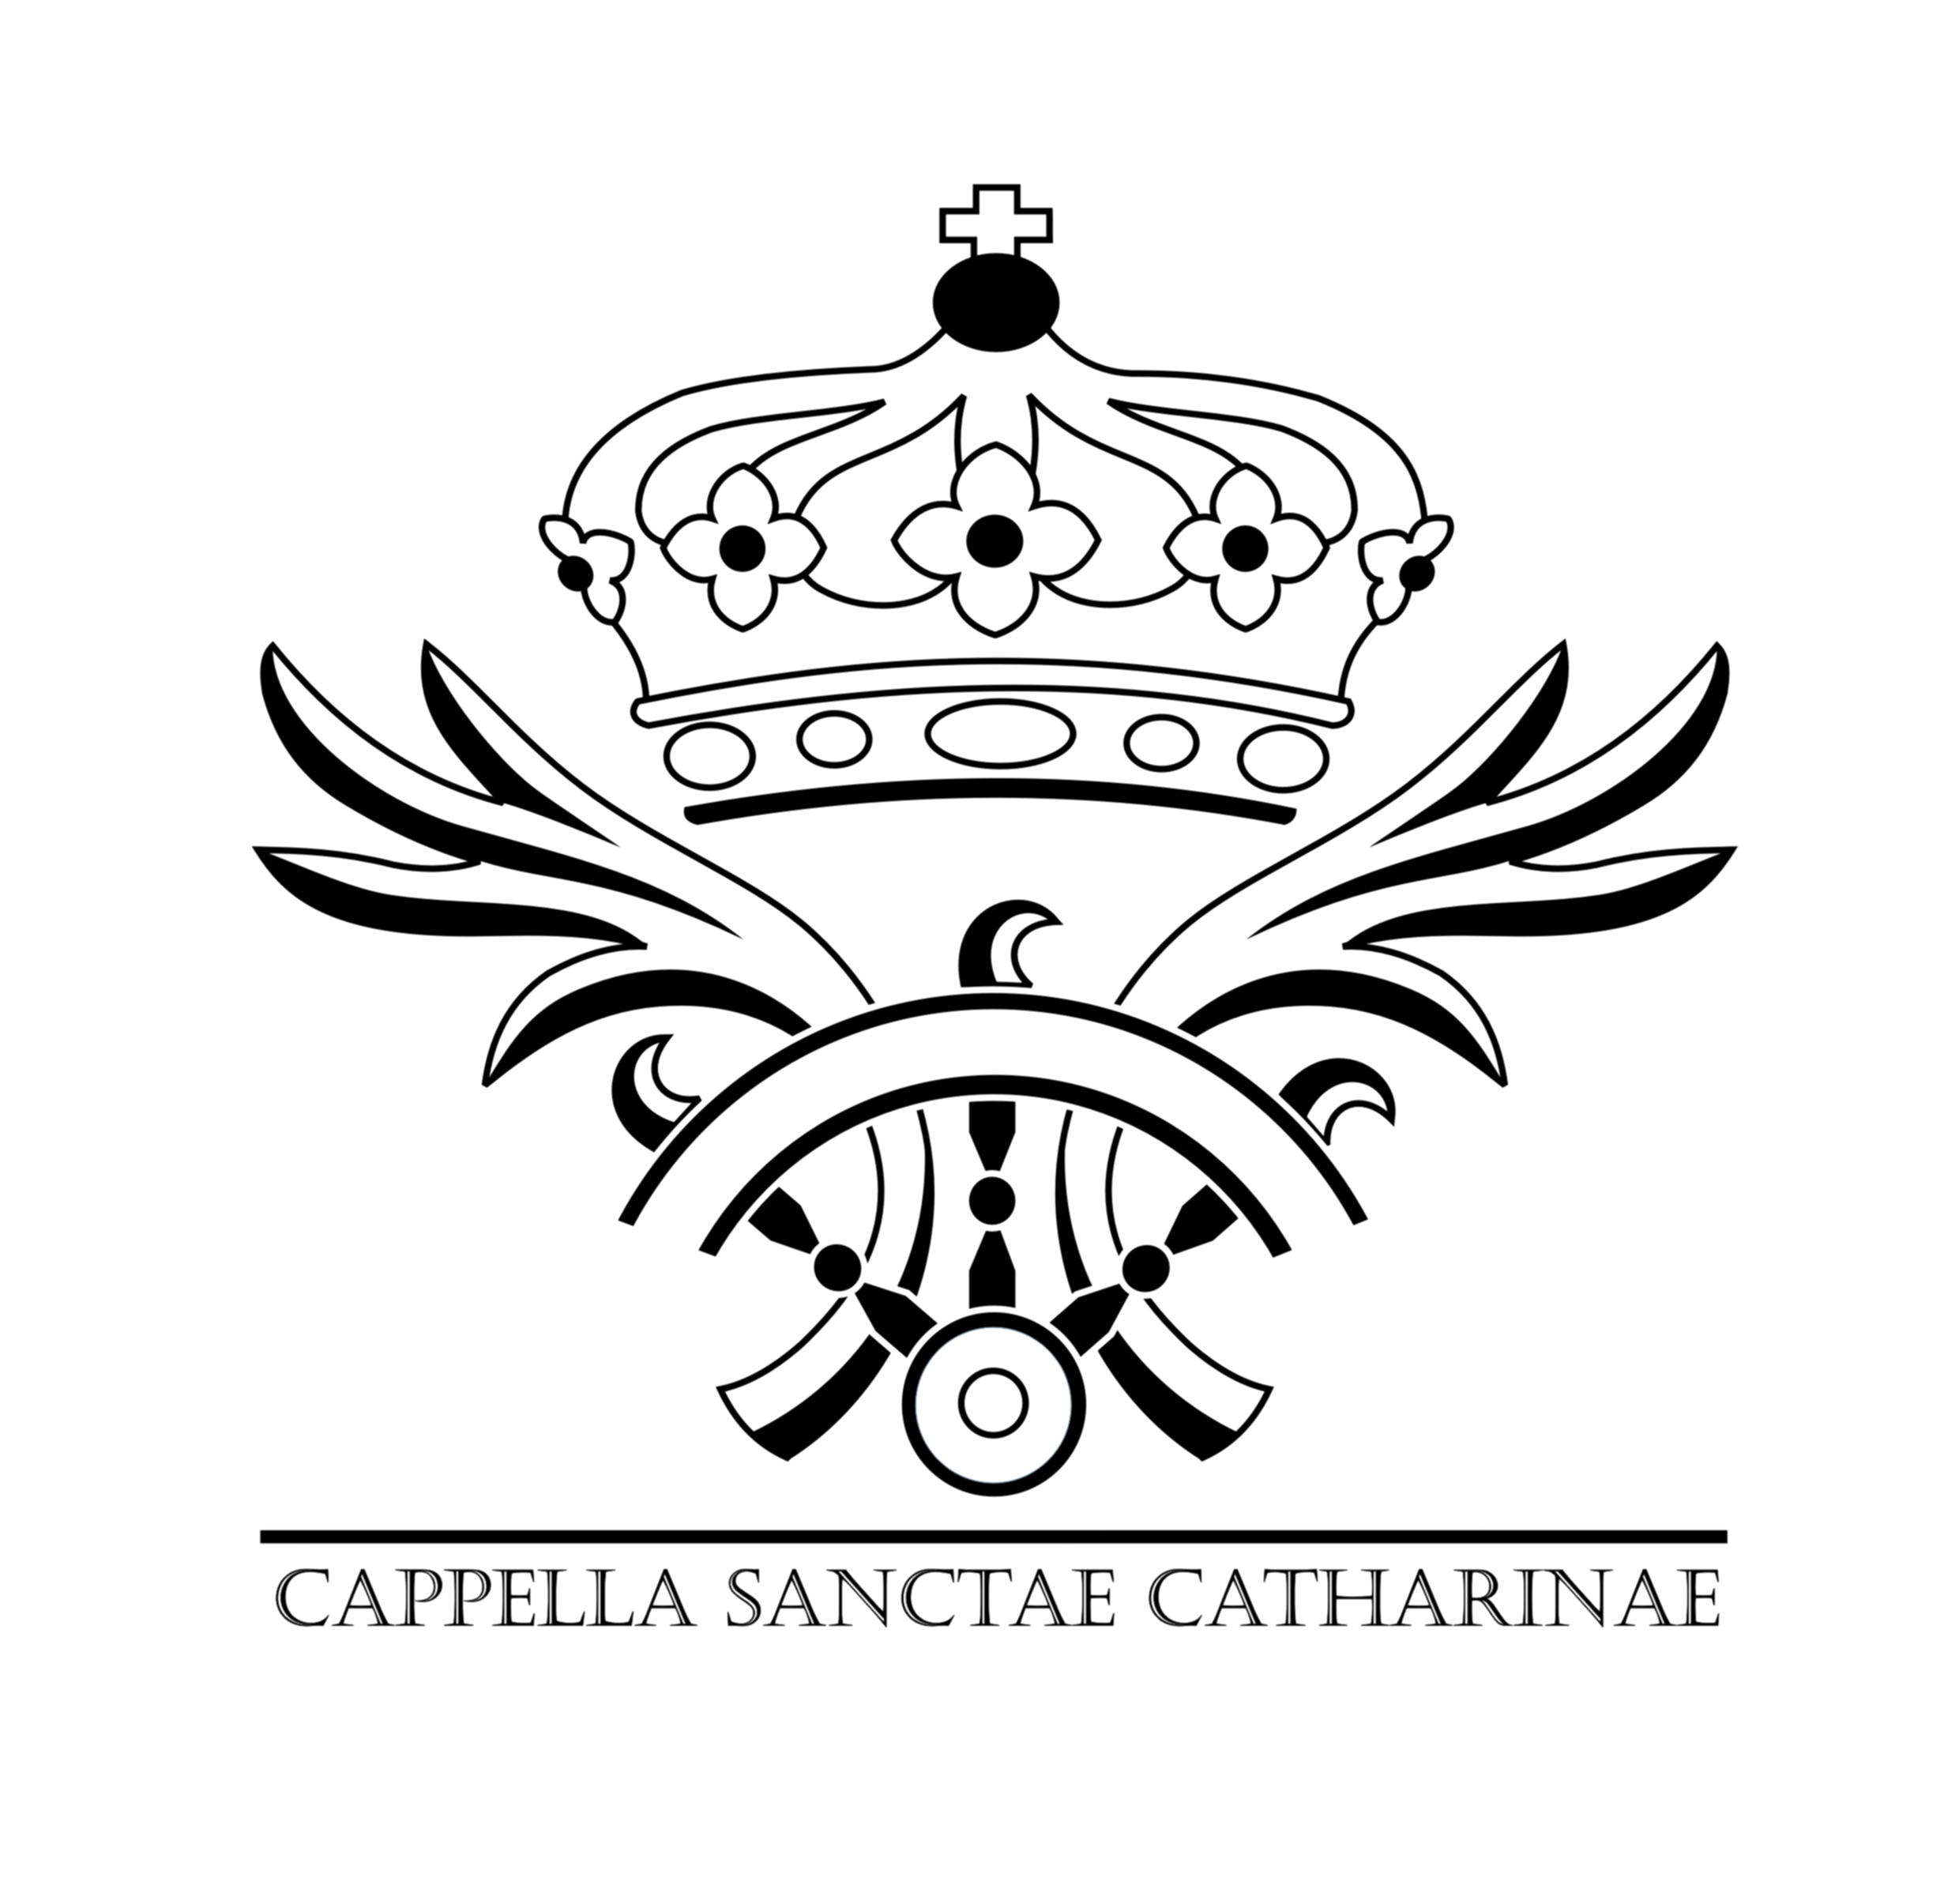 Cappella Sanctae Catharinae